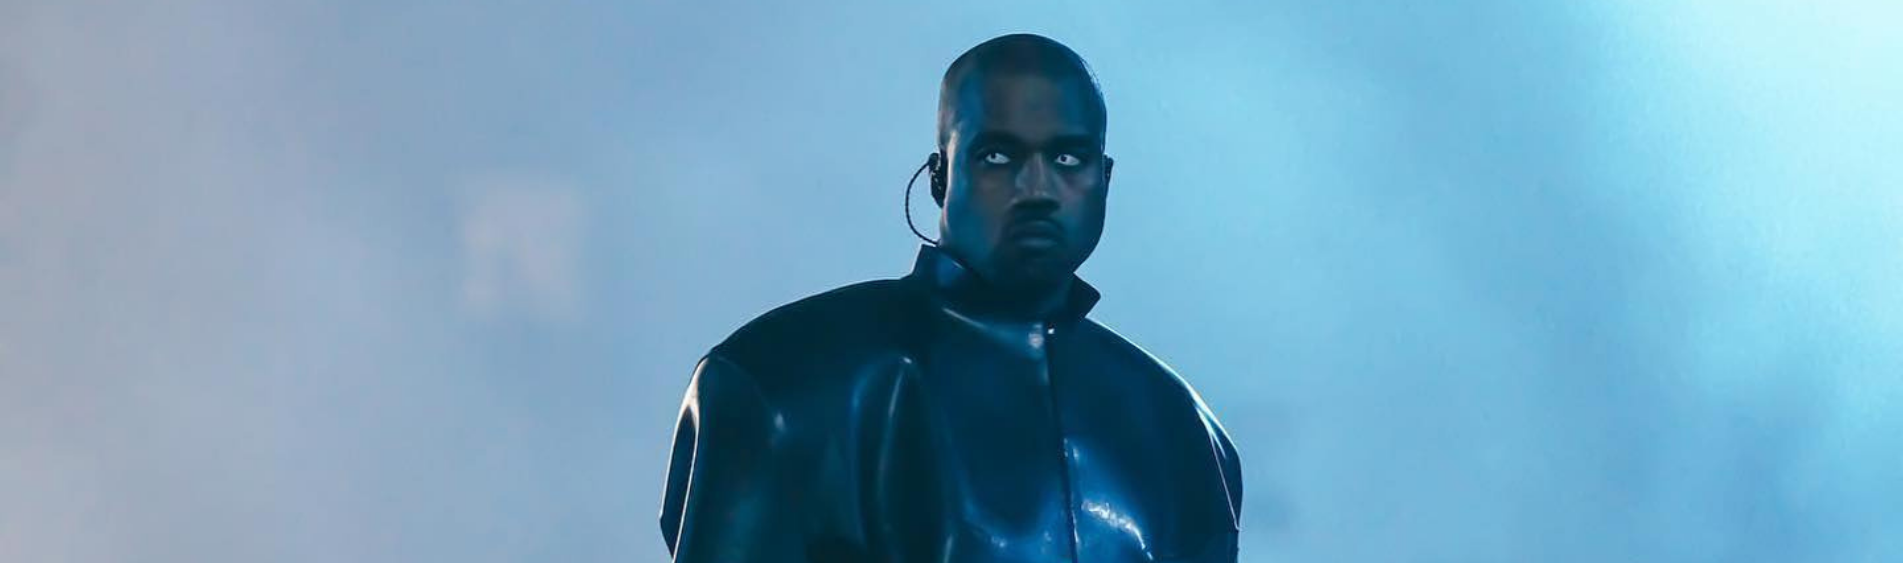 Capa Kanye West- Site Noize